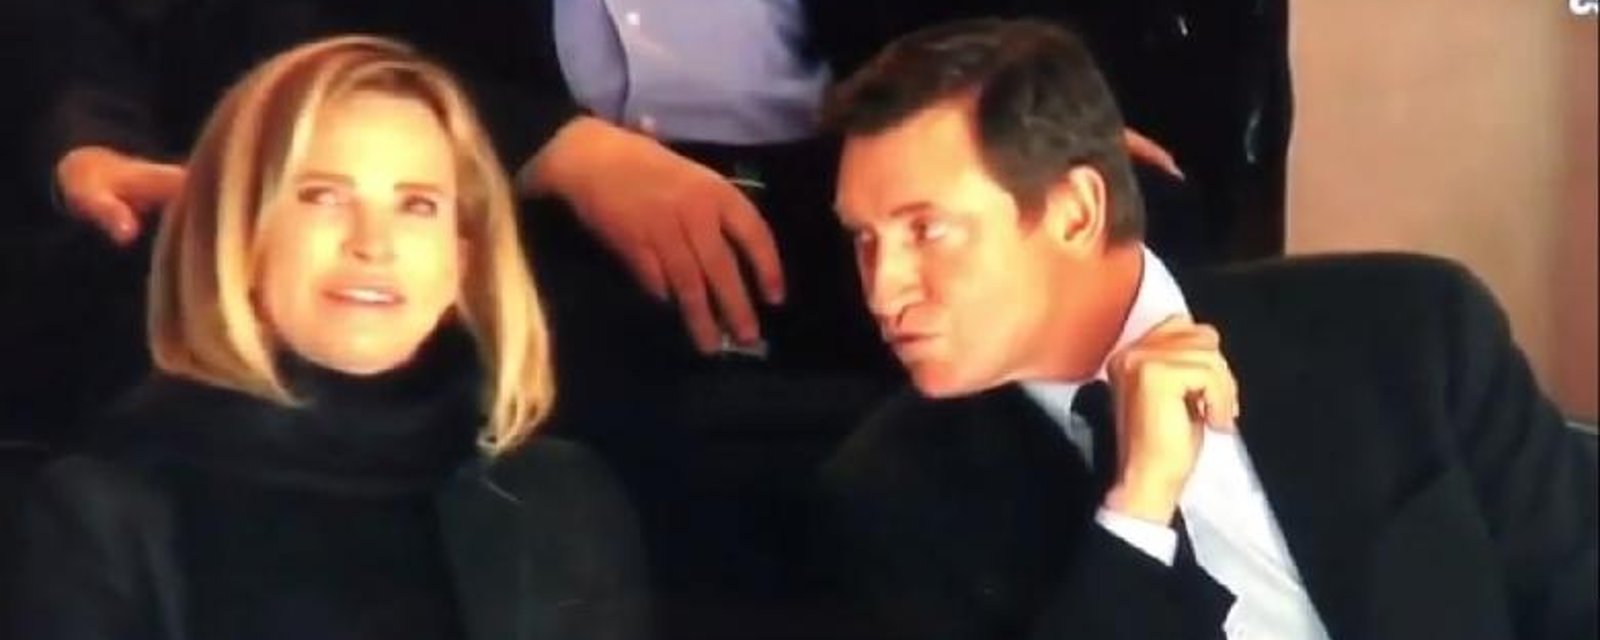 Wayne Gretzky se fait rejeter par sa femme en direct à la télé!